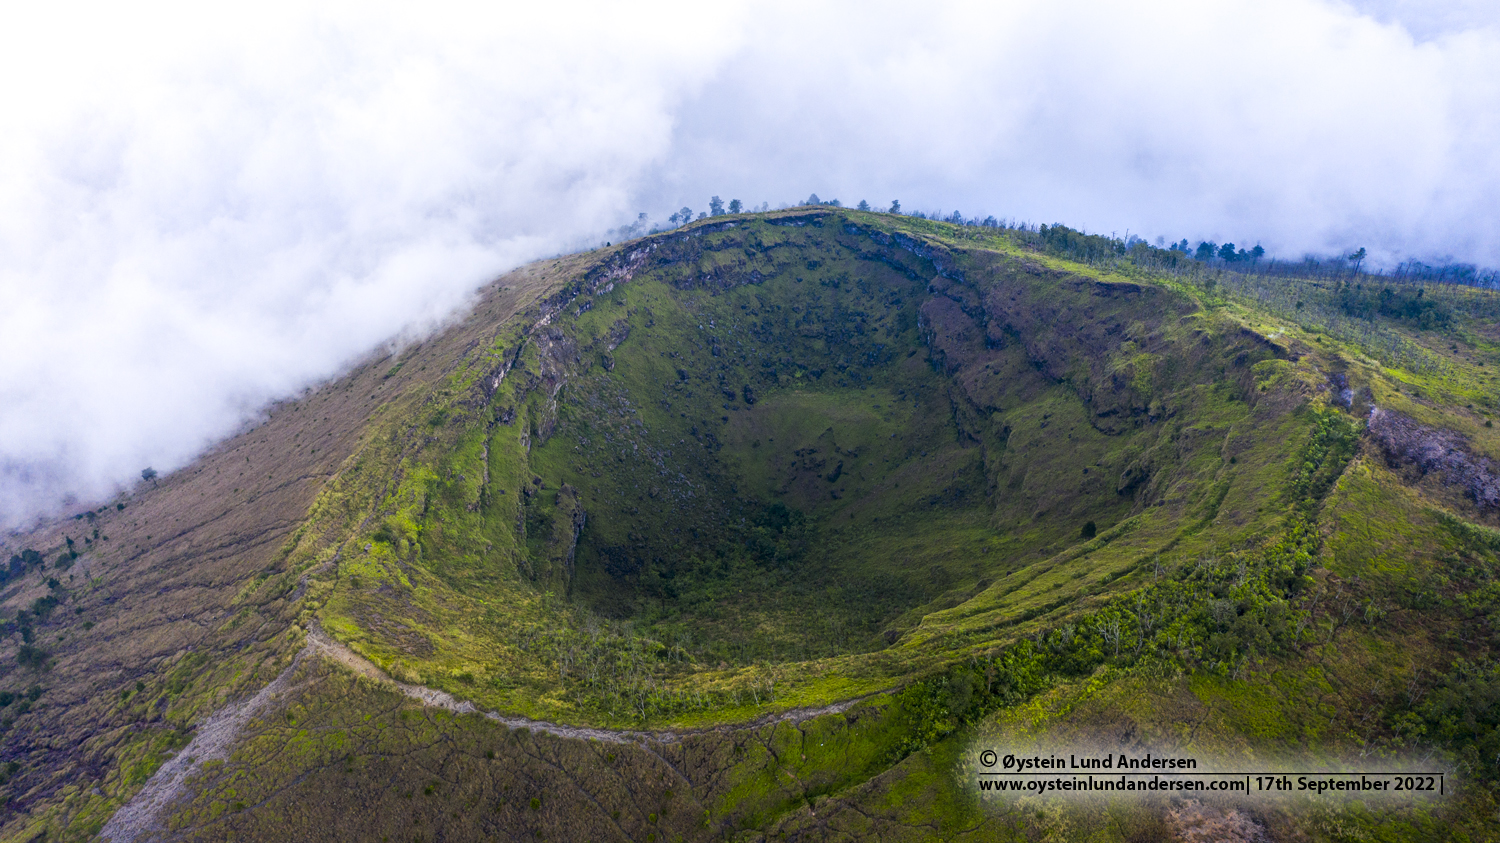 Guntur volcano Indonesia 2022 aerial